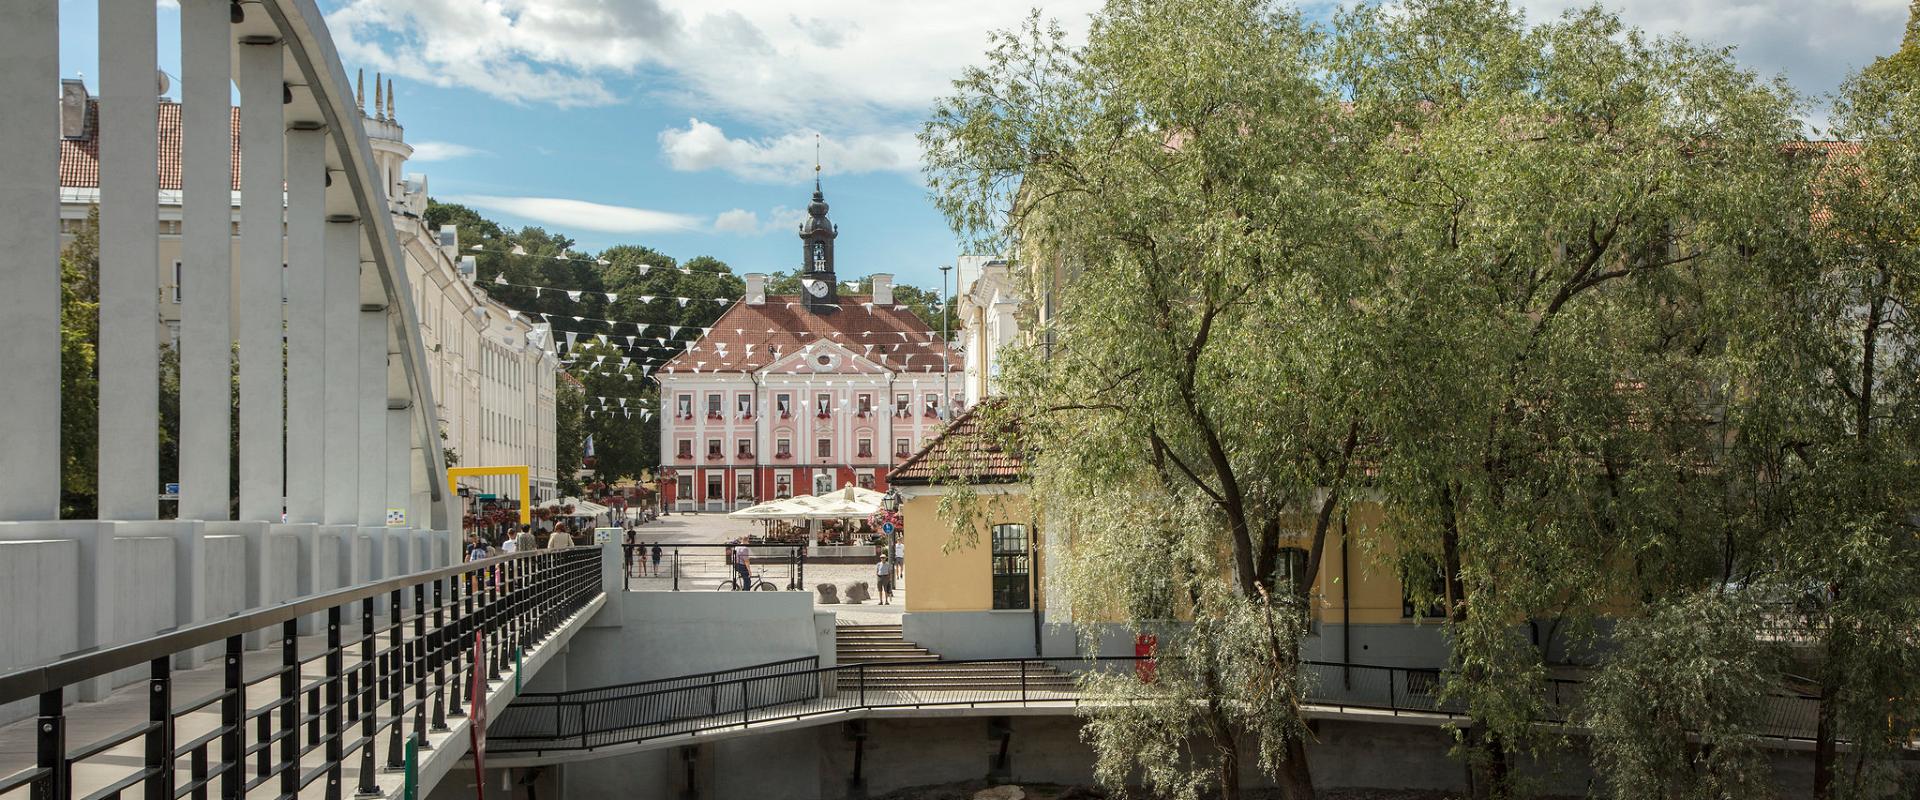 Die Bogenbrücke und Rathausplatz an einem hellen Sommertag